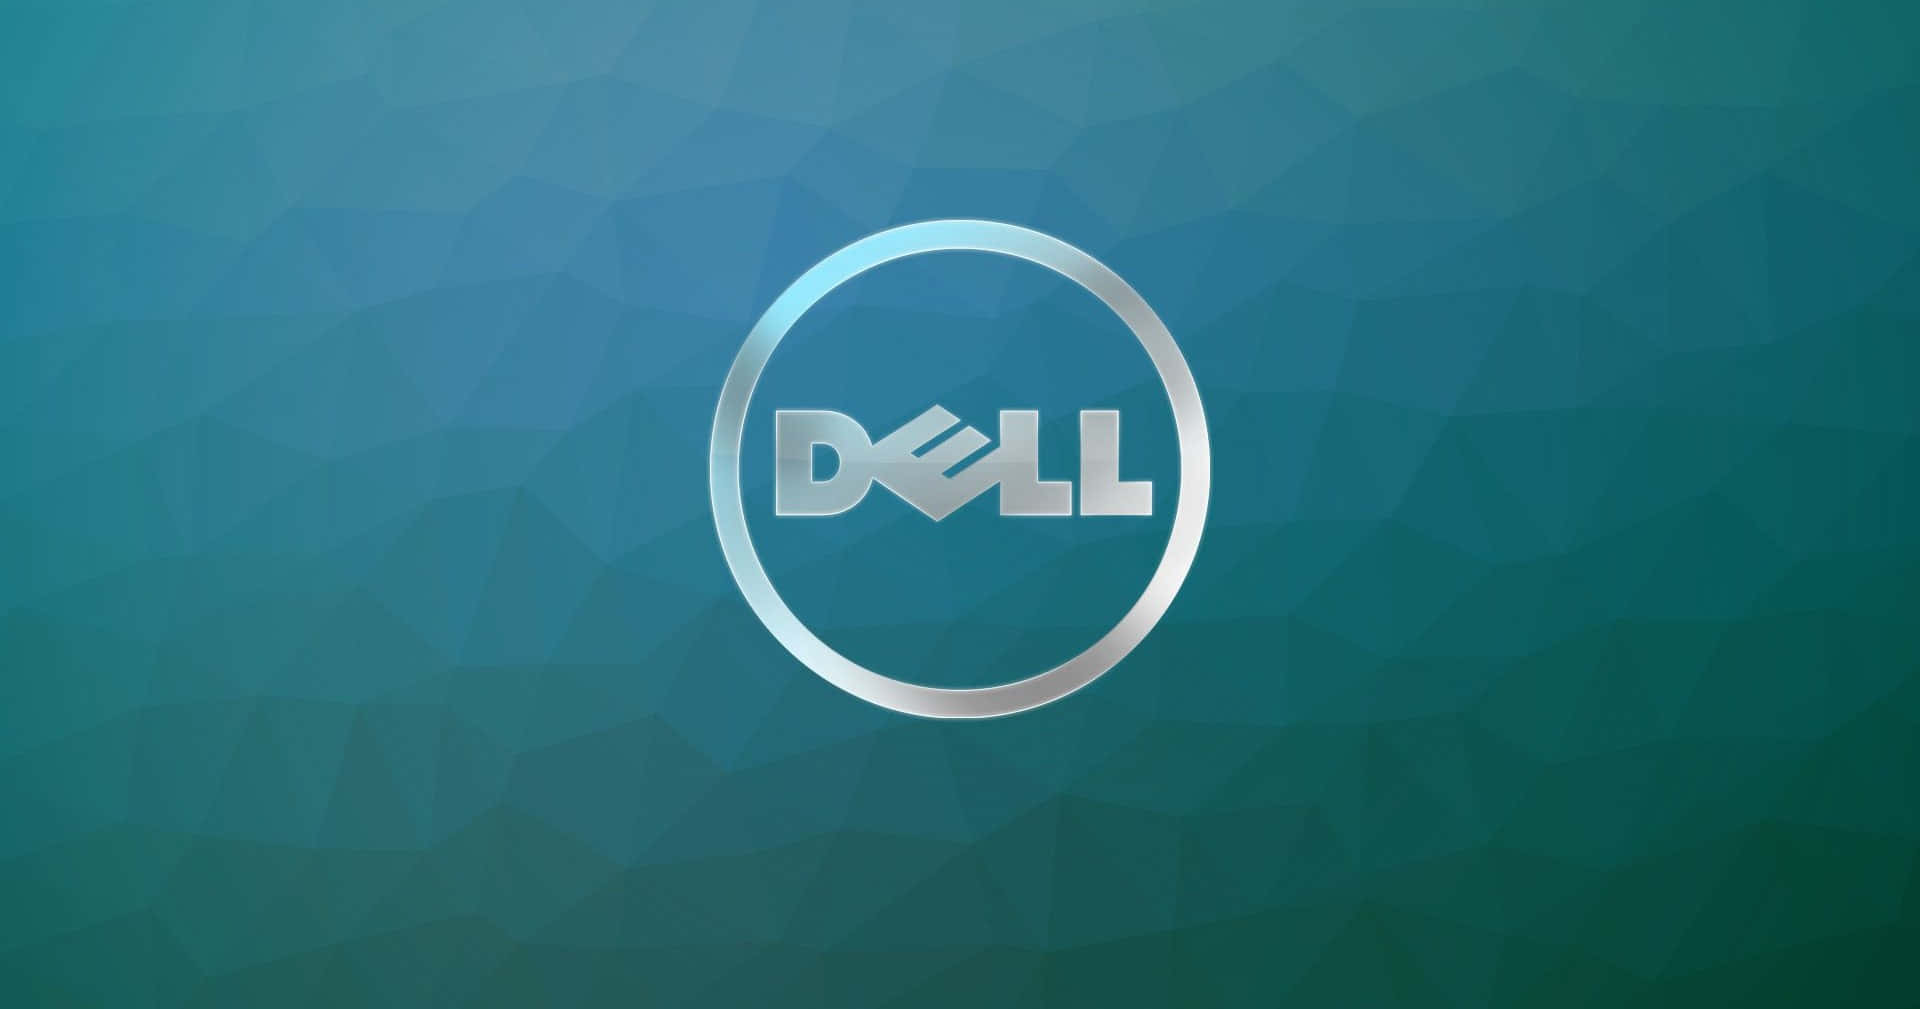 Hurtigereog Smartere: Dell Teknologi Til Dine Behov